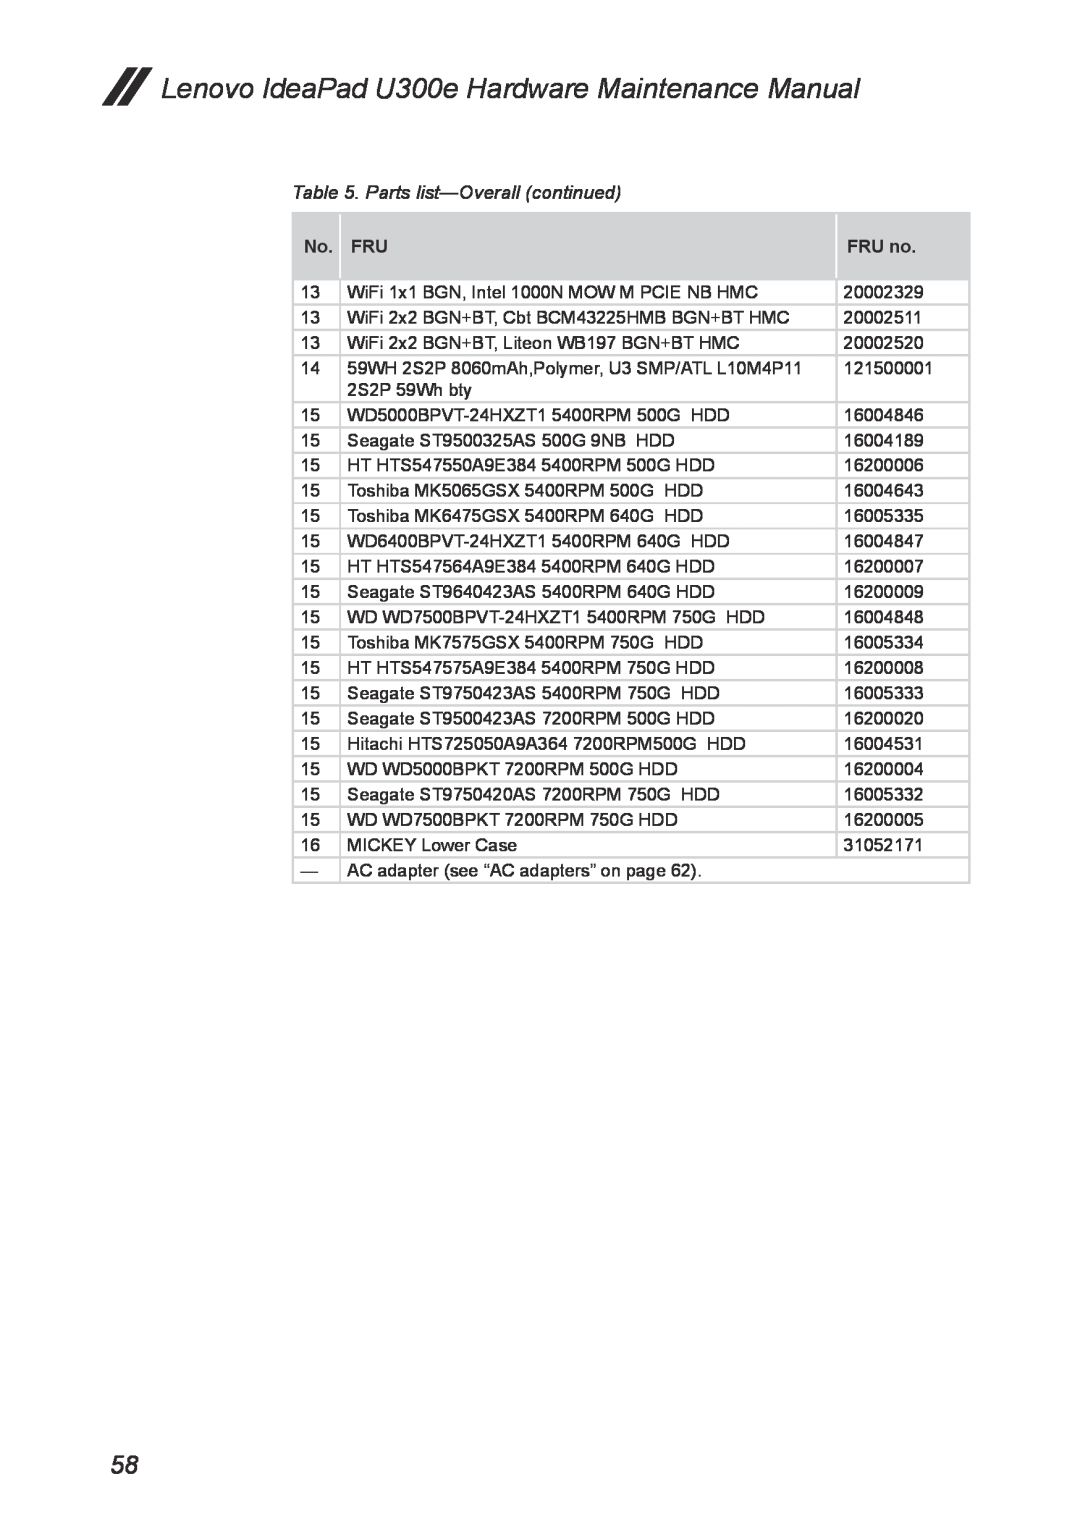 Lenovo U300E manual Parts list-Overall continued, Lenovo IdeaPad U300e Hardware Maintenance Manual 